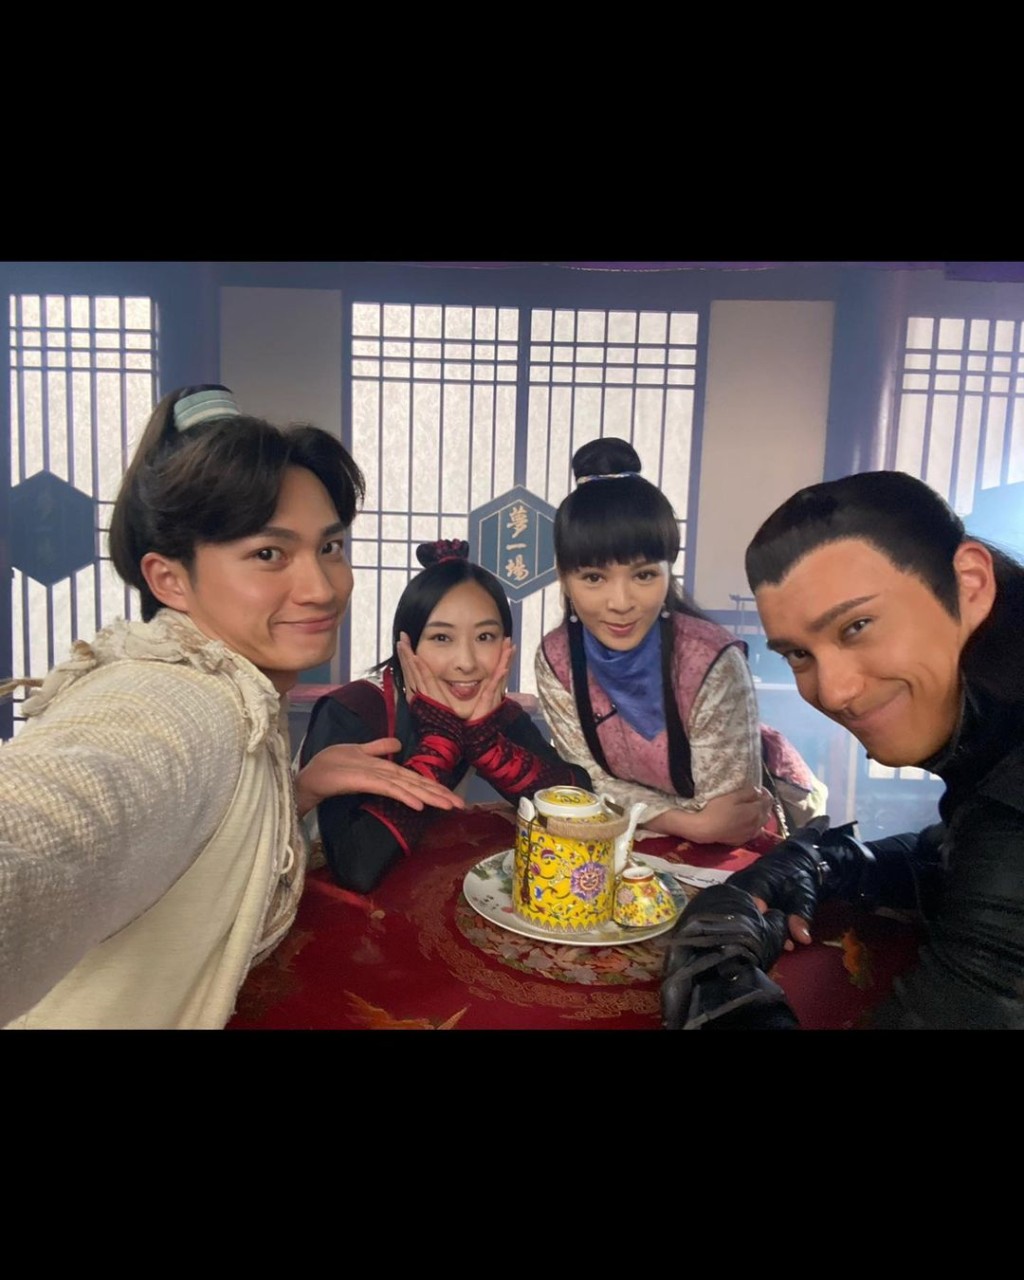 周嘉洛与陈滢于2021年拍摄TVB剧《痞子殿下》时传绯闻。